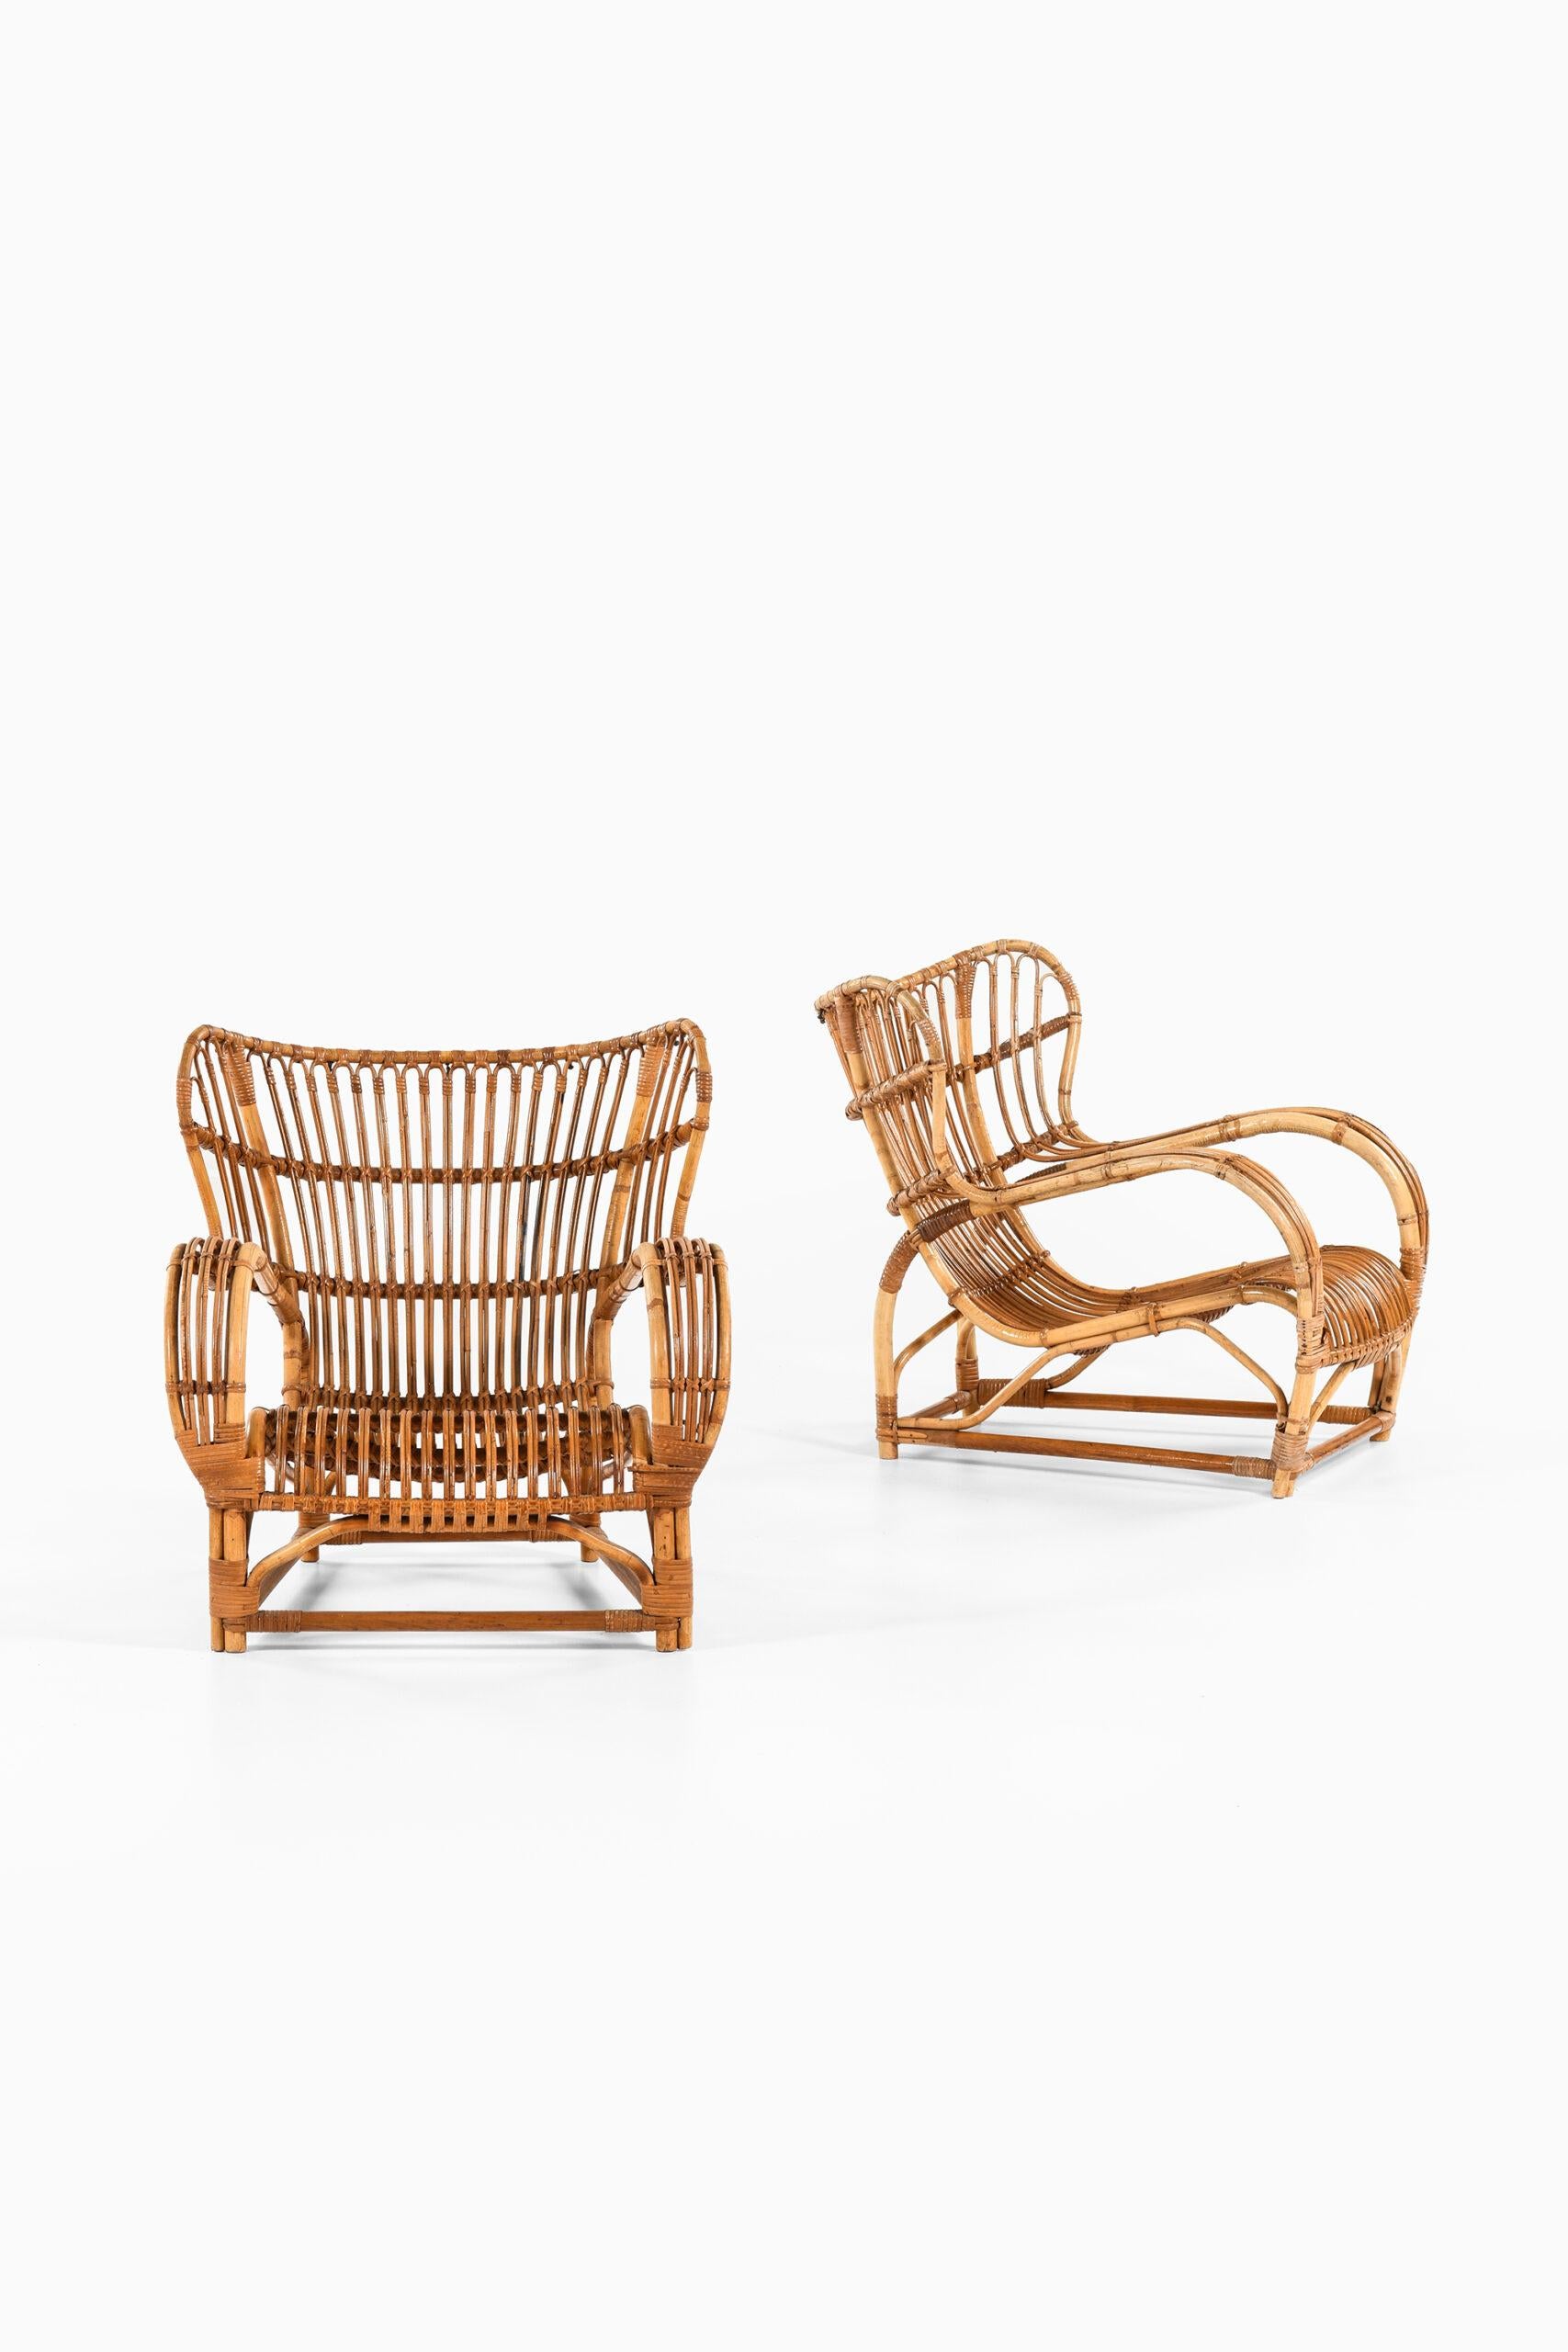 Rare paire de fauteuils modèle 3440 conçus par Viggo Boesen. Produit par R. Wengler au Danemark.
Coussin original (pour 1 chaise).